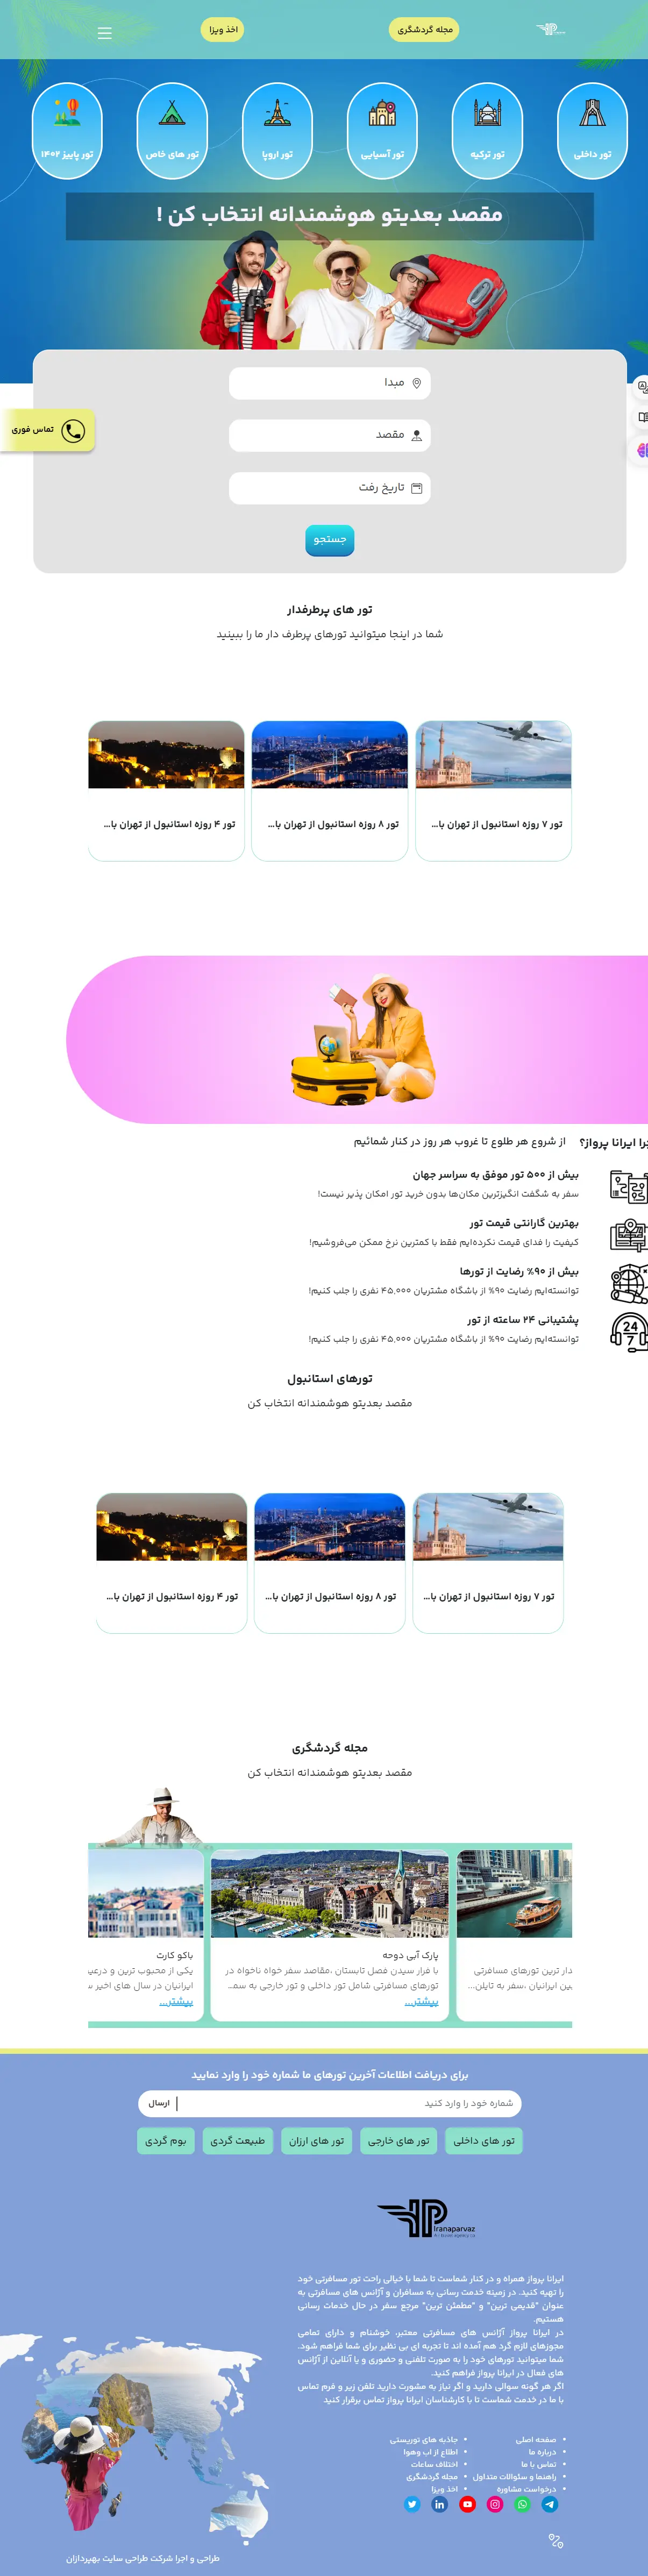 طراحی سایت فروشگاهی ایرانا پرواز